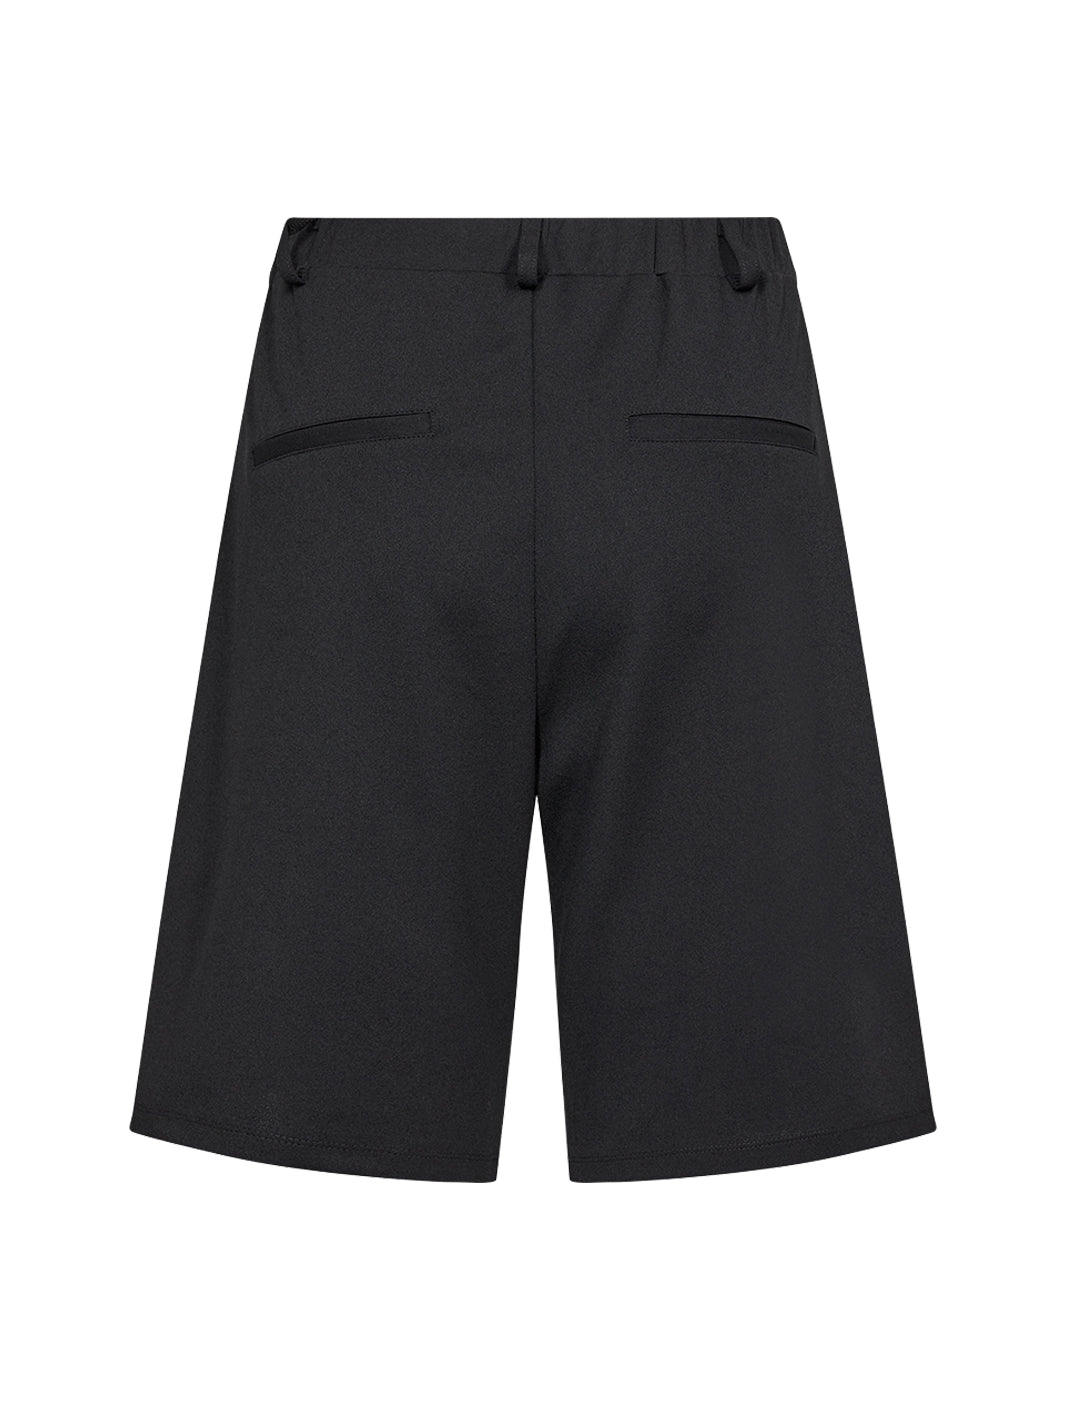 Soya Concept Siham 79 shorts black - Online - Mode